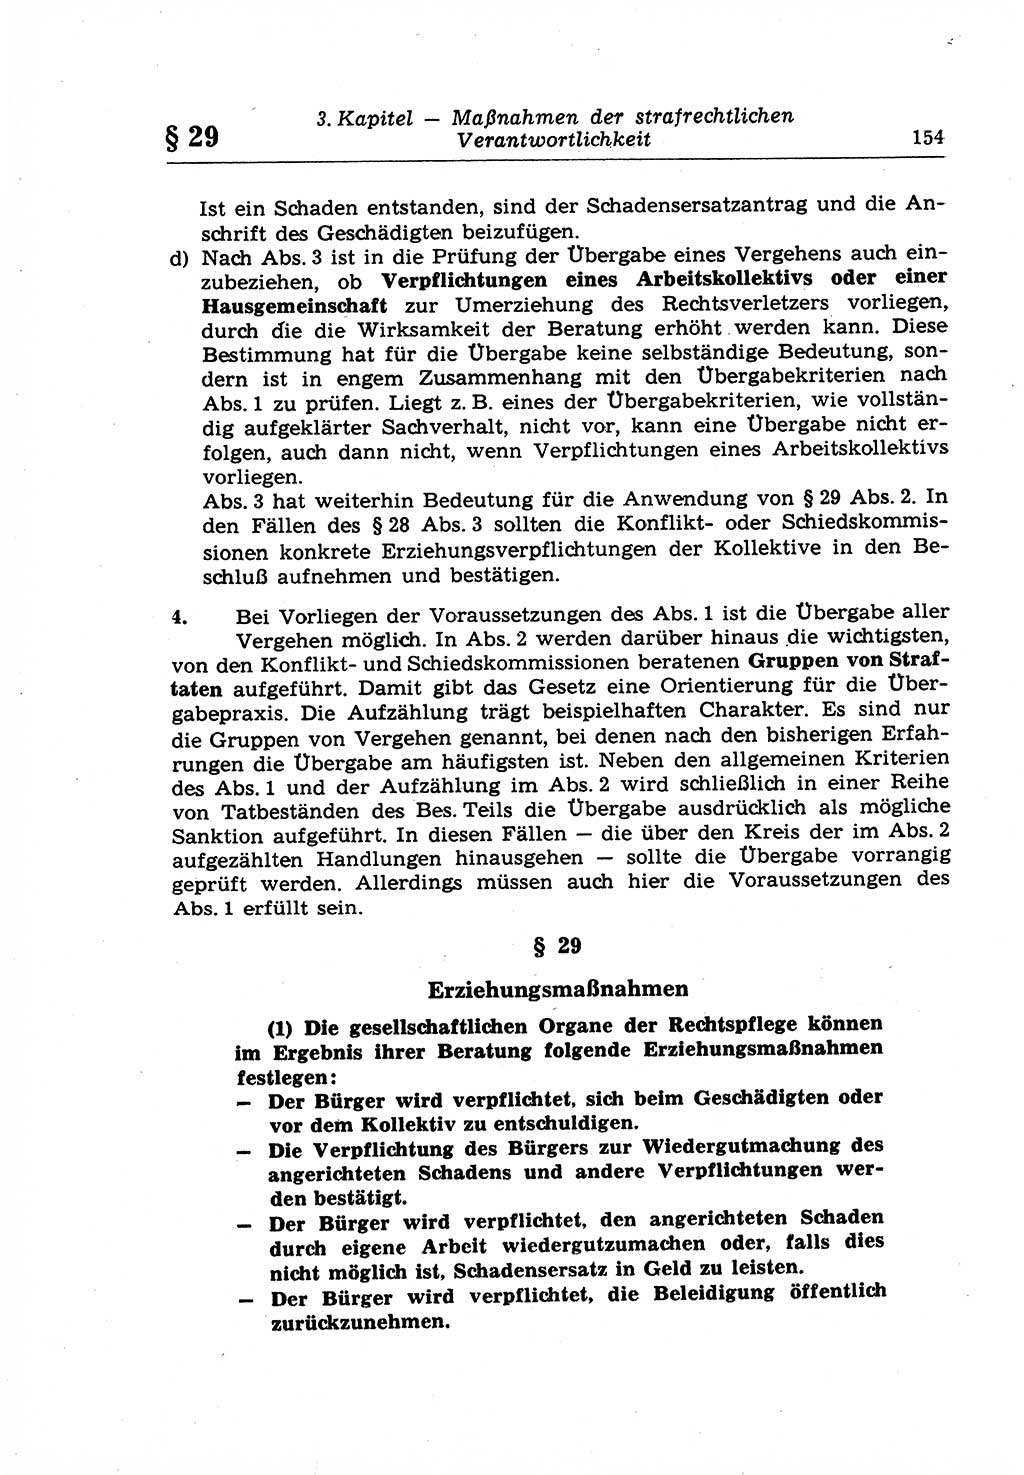 Strafrecht der Deutschen Demokratischen Republik (DDR), Lehrkommentar zum Strafgesetzbuch (StGB), Allgemeiner Teil 1969, Seite 154 (Strafr. DDR Lehrkomm. StGB AT 1969, S. 154)